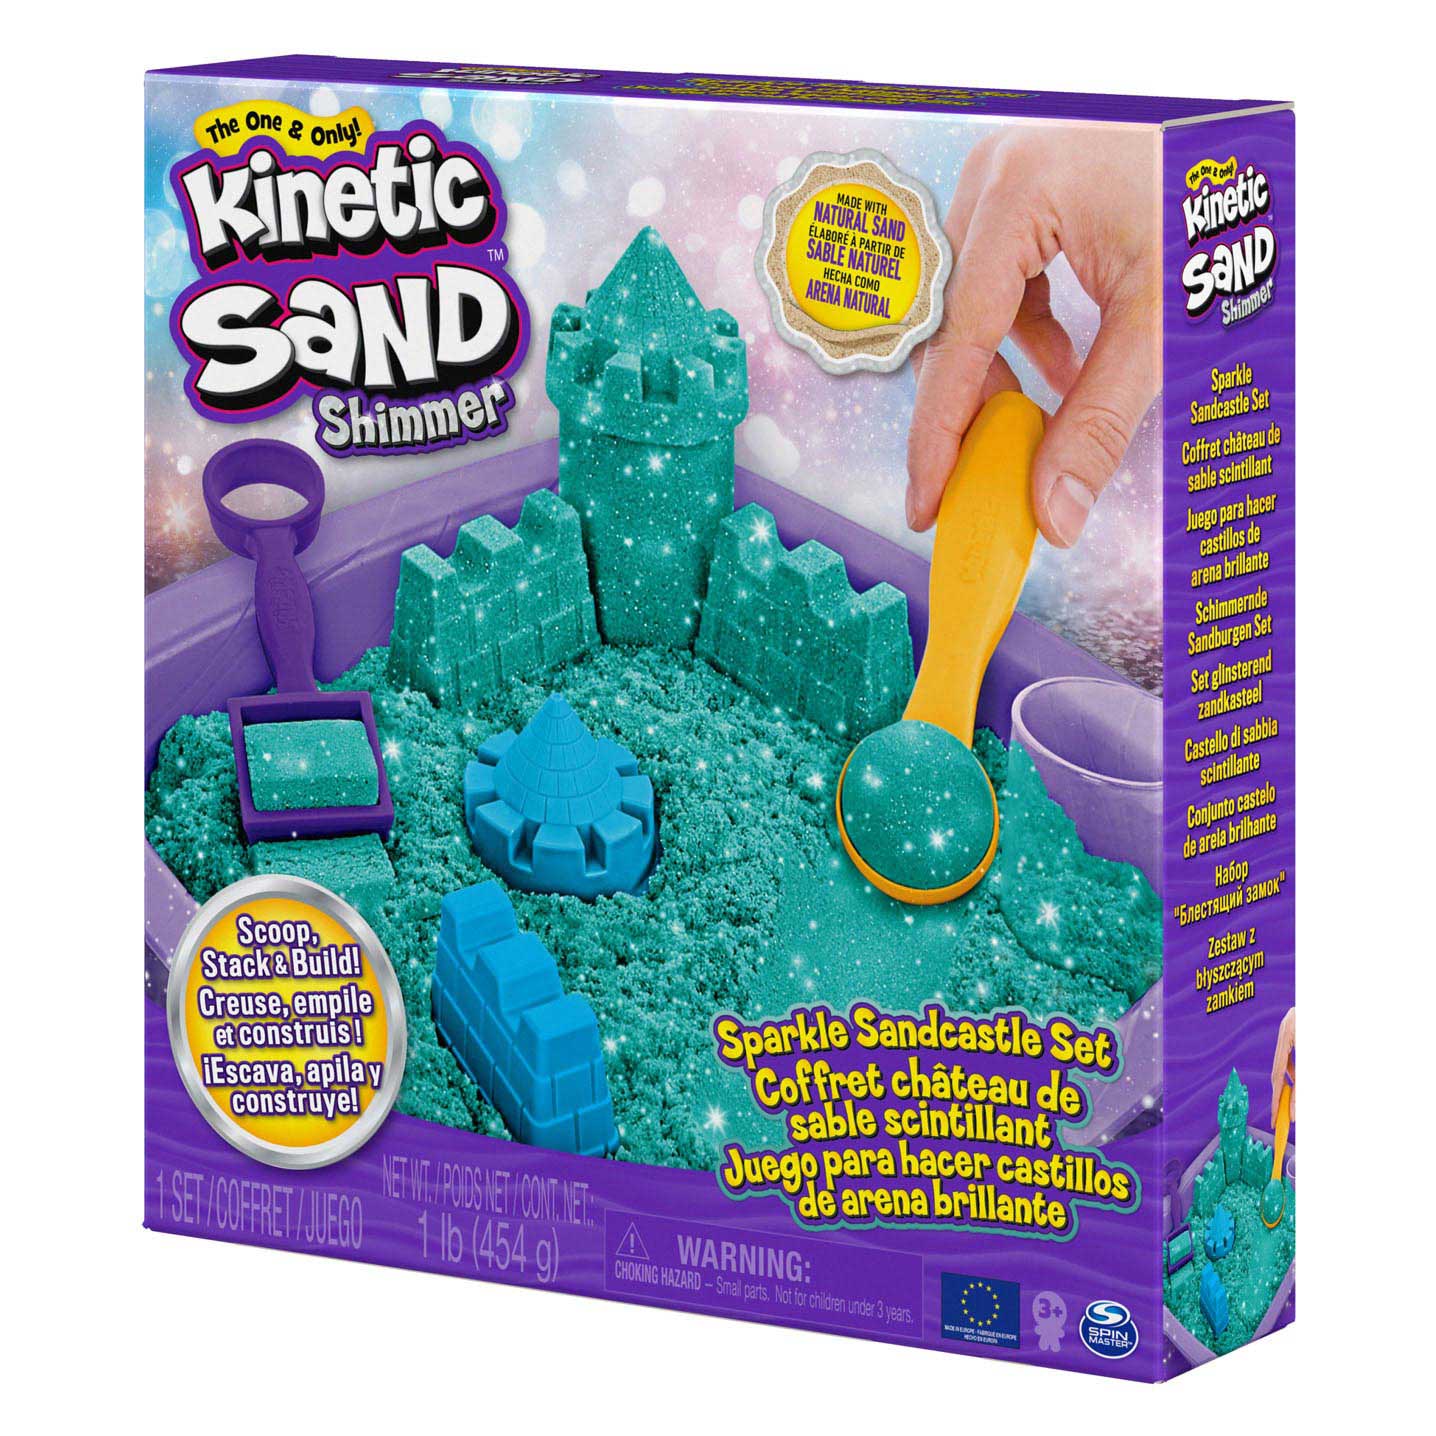 Kinetic Sand - Shimmer Zandkasteel Set Blauwgroen, 453gr.